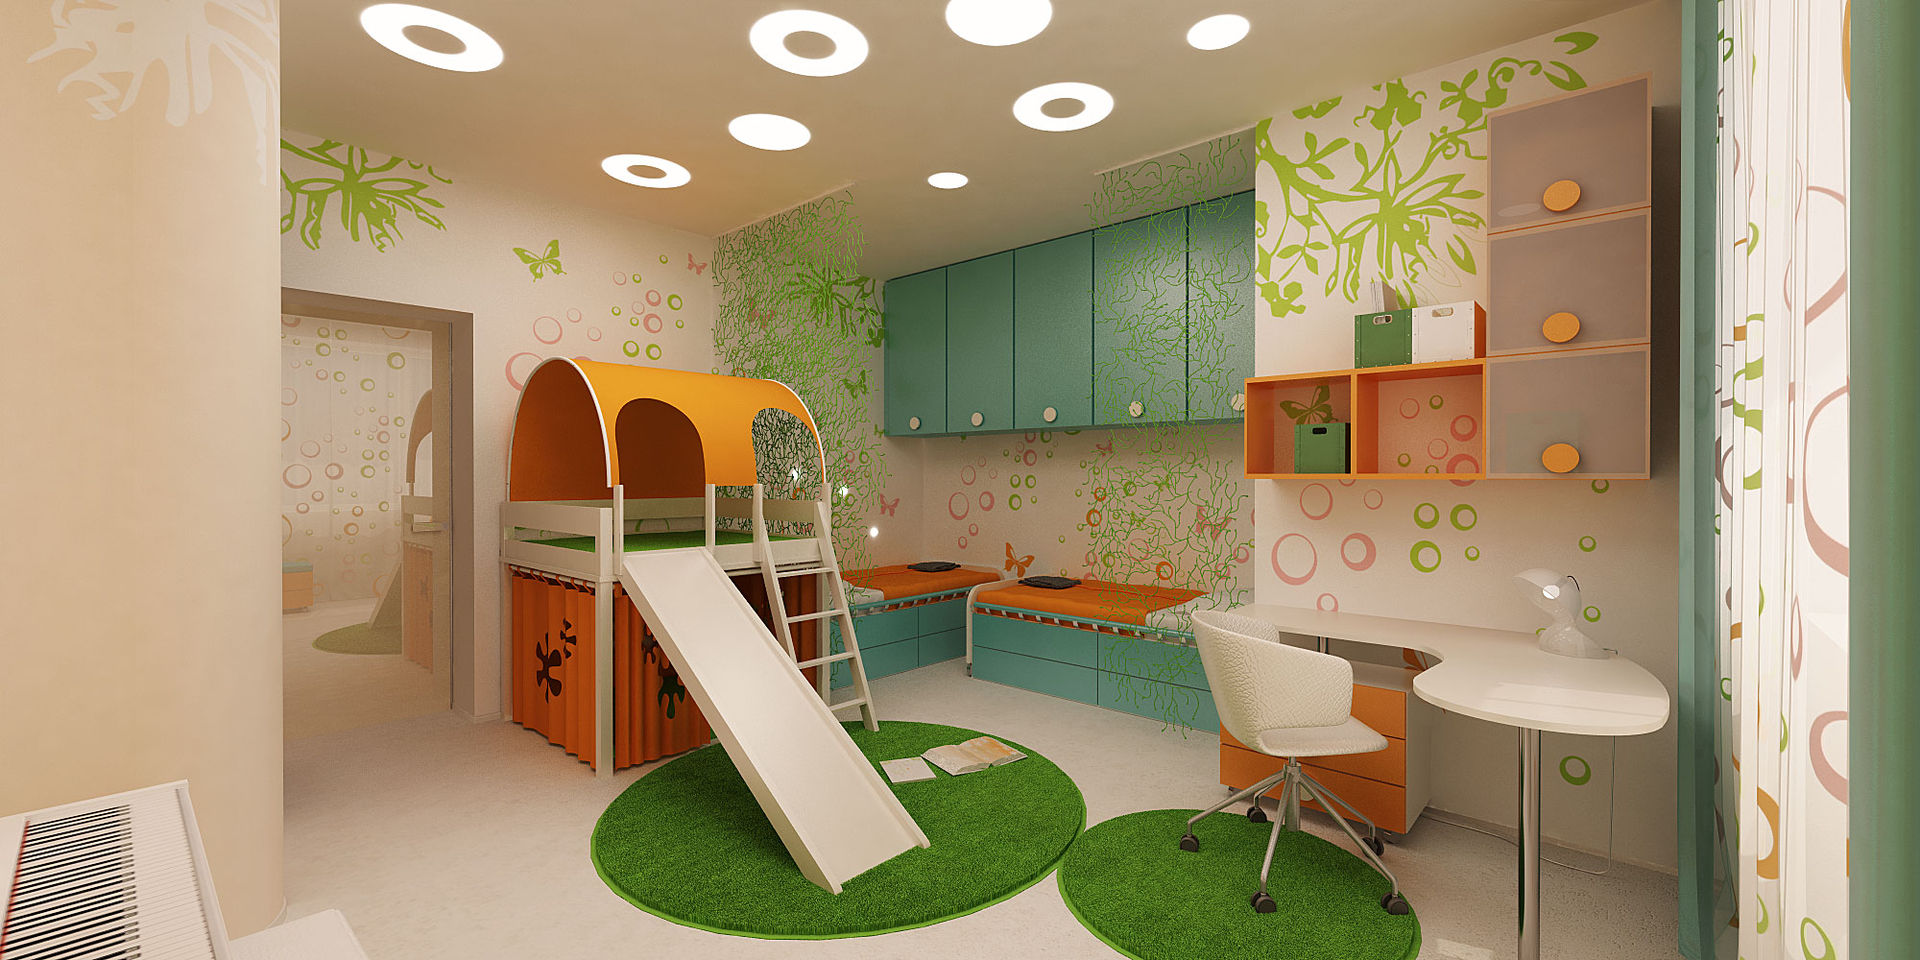 Апартаменты «ЭНЕРГИЯ ЦВЕТА», ART Studio Design & Construction ART Studio Design & Construction Dormitorios infantiles de estilo ecléctico